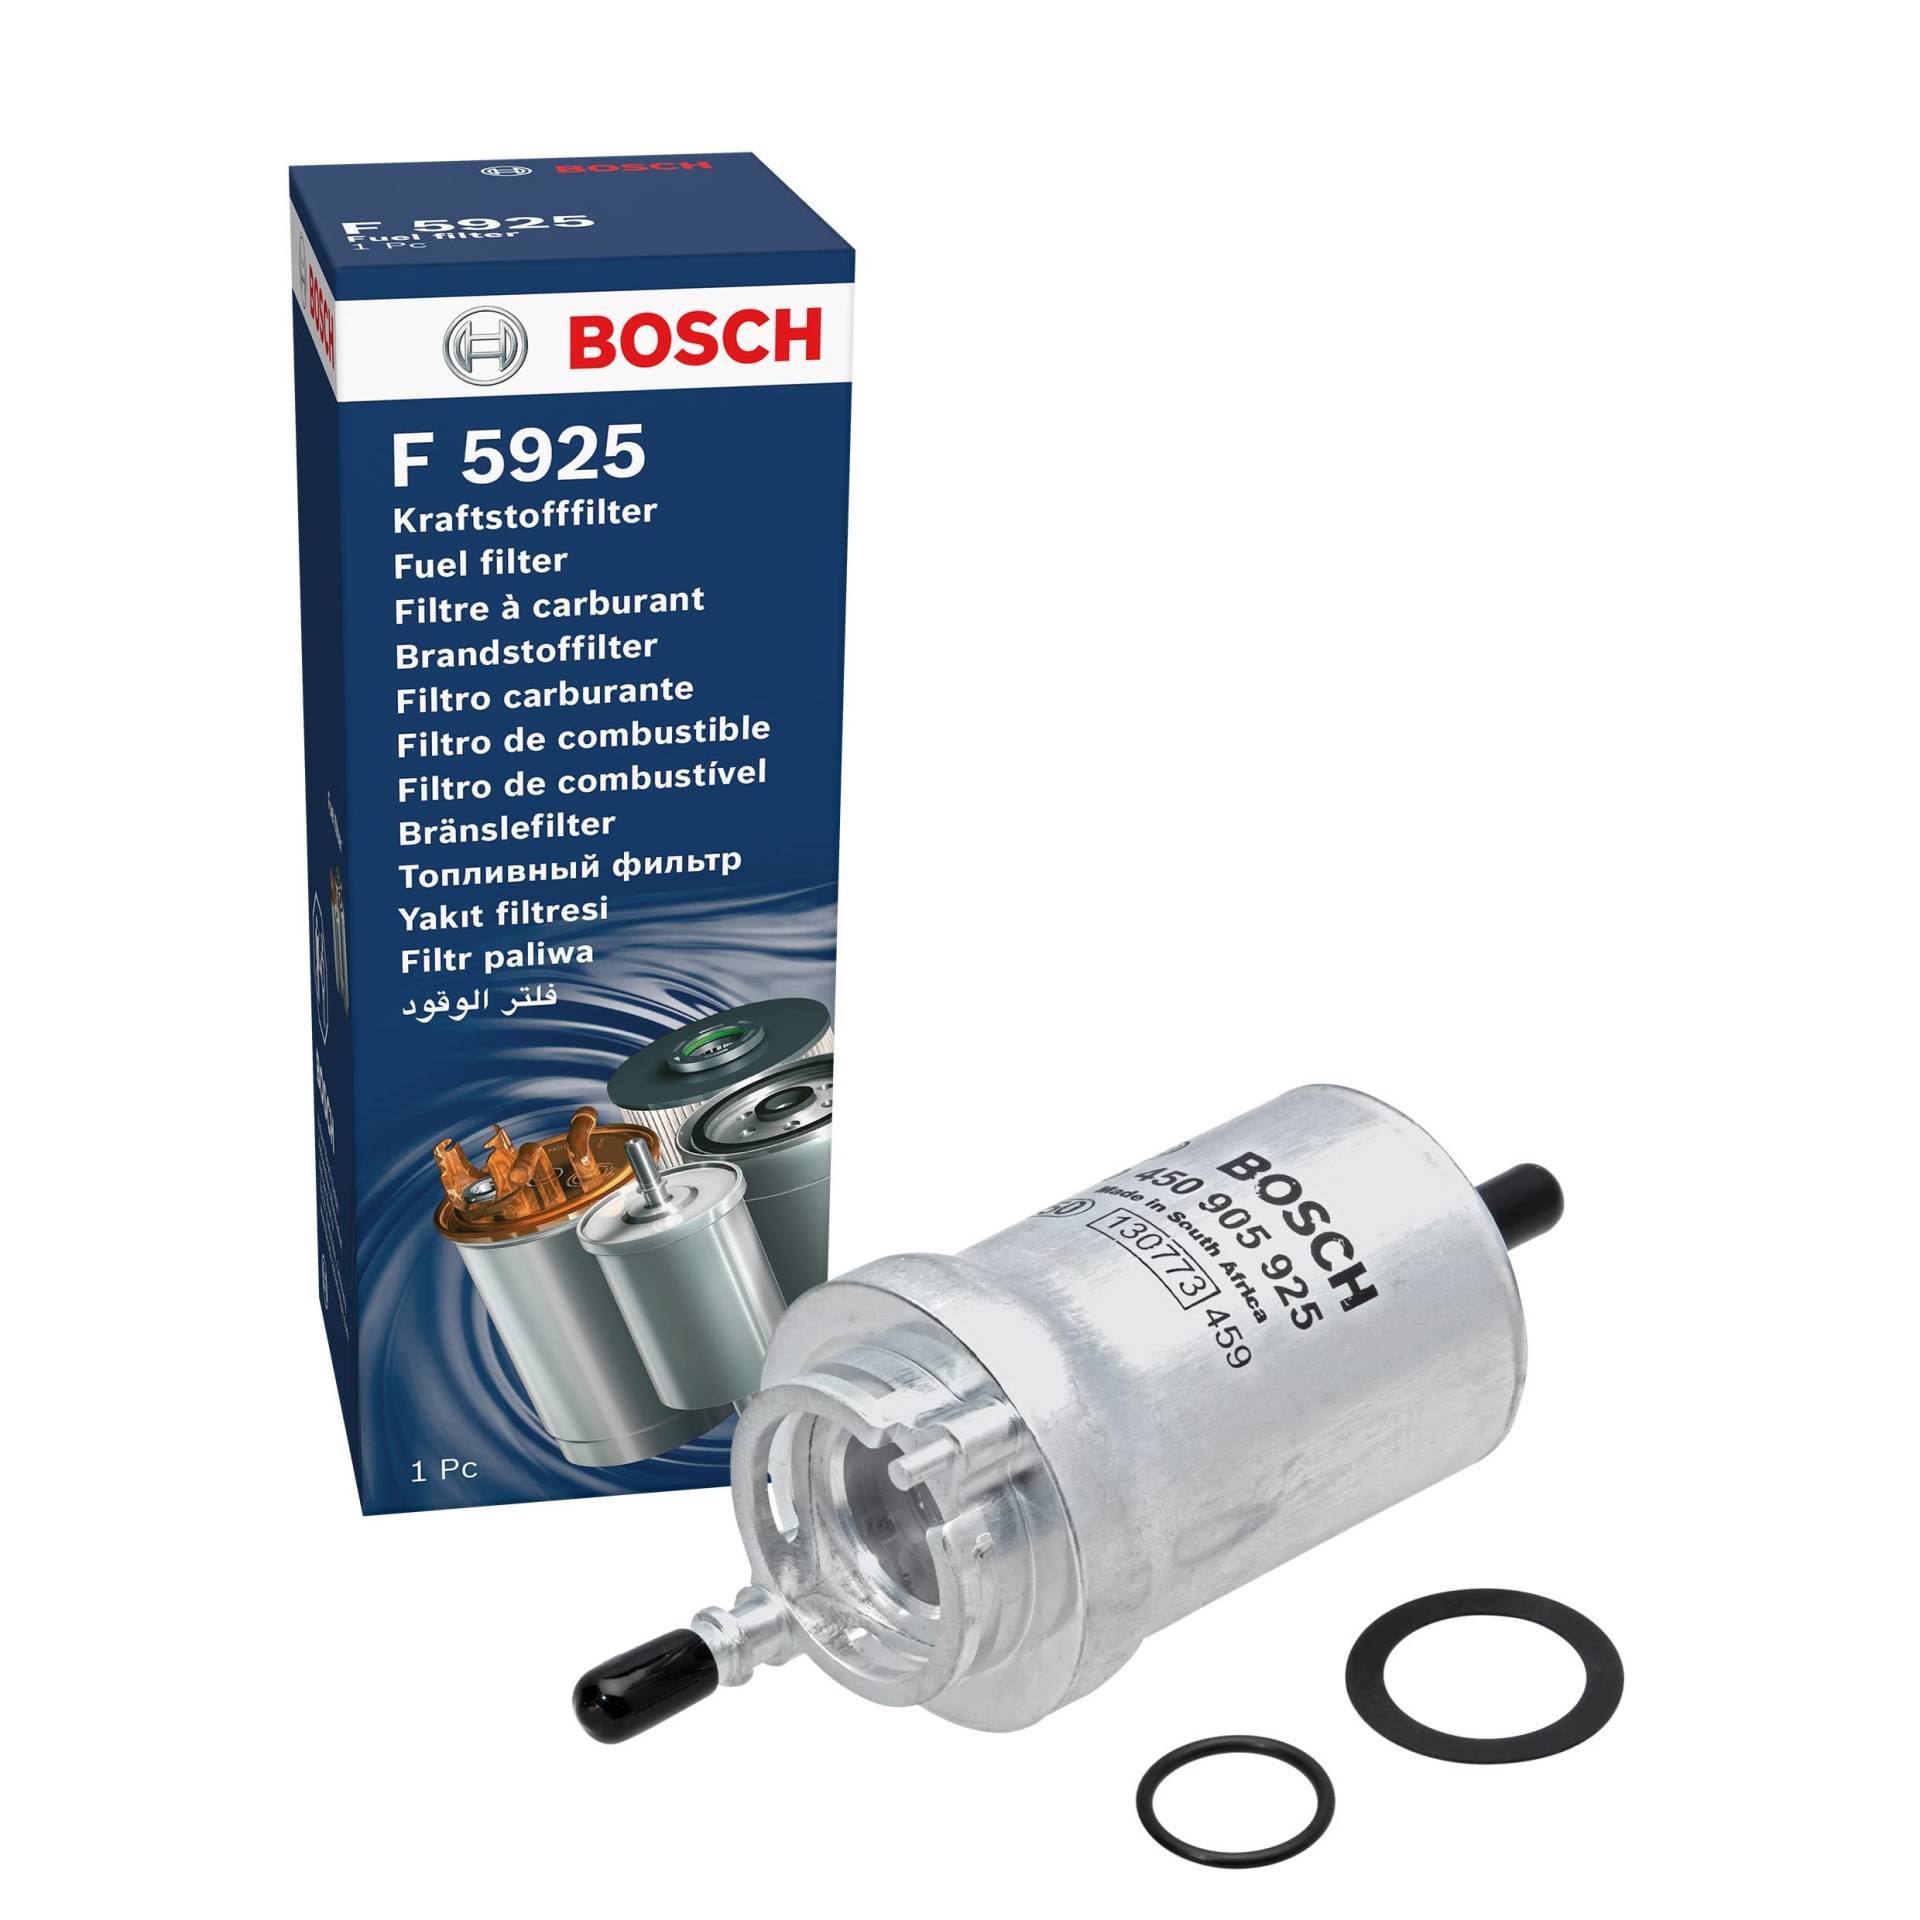 Bosch F5925 - Benzinfilter Auto von Bosch Automotive